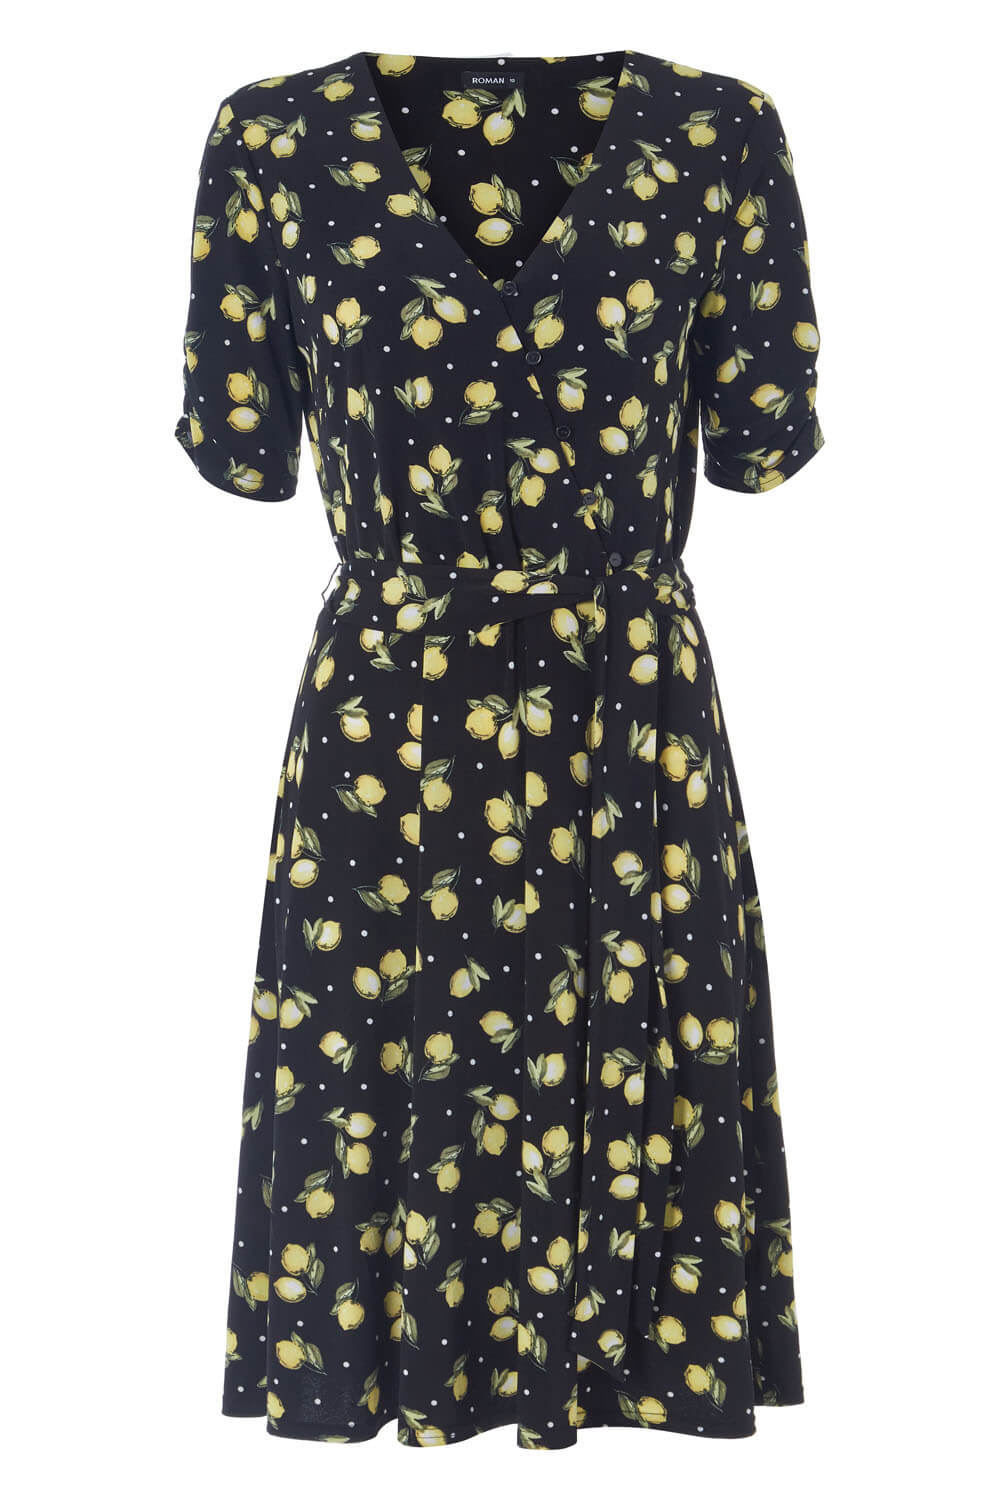 Lemon Print Wrap Dress in Black - Roman Originals UK